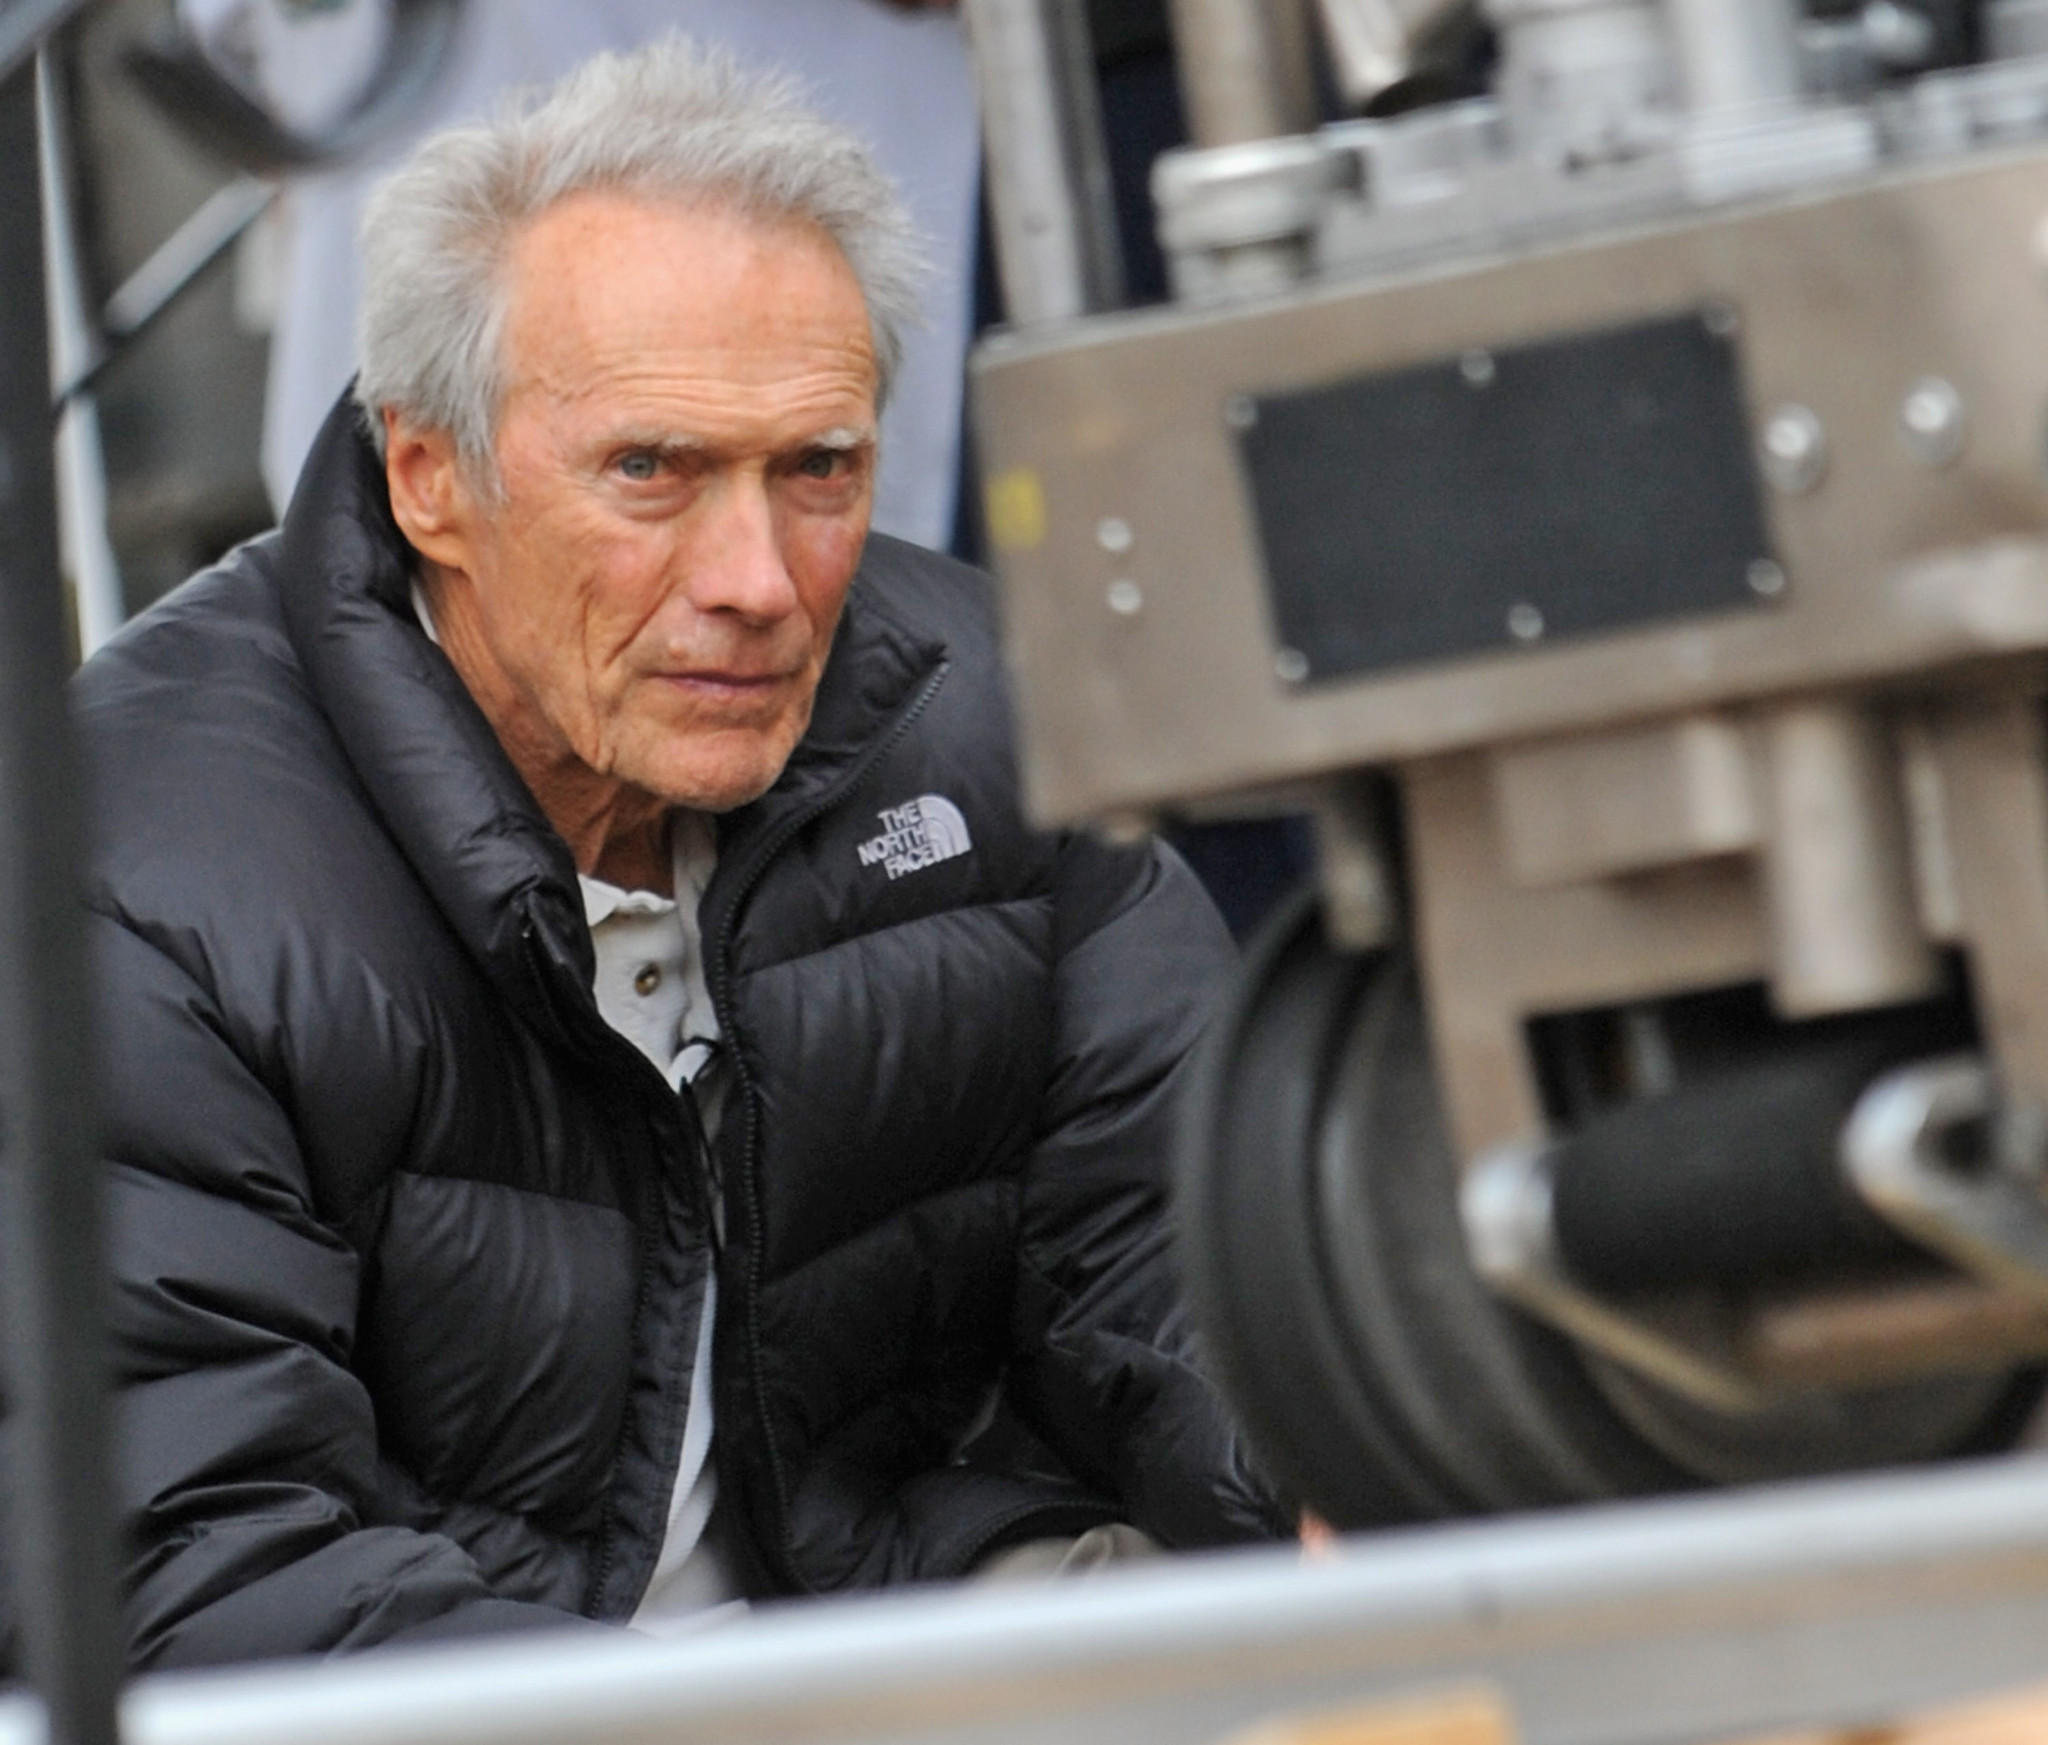 Eastwood započeo rad na svom novom filmu "Sully"